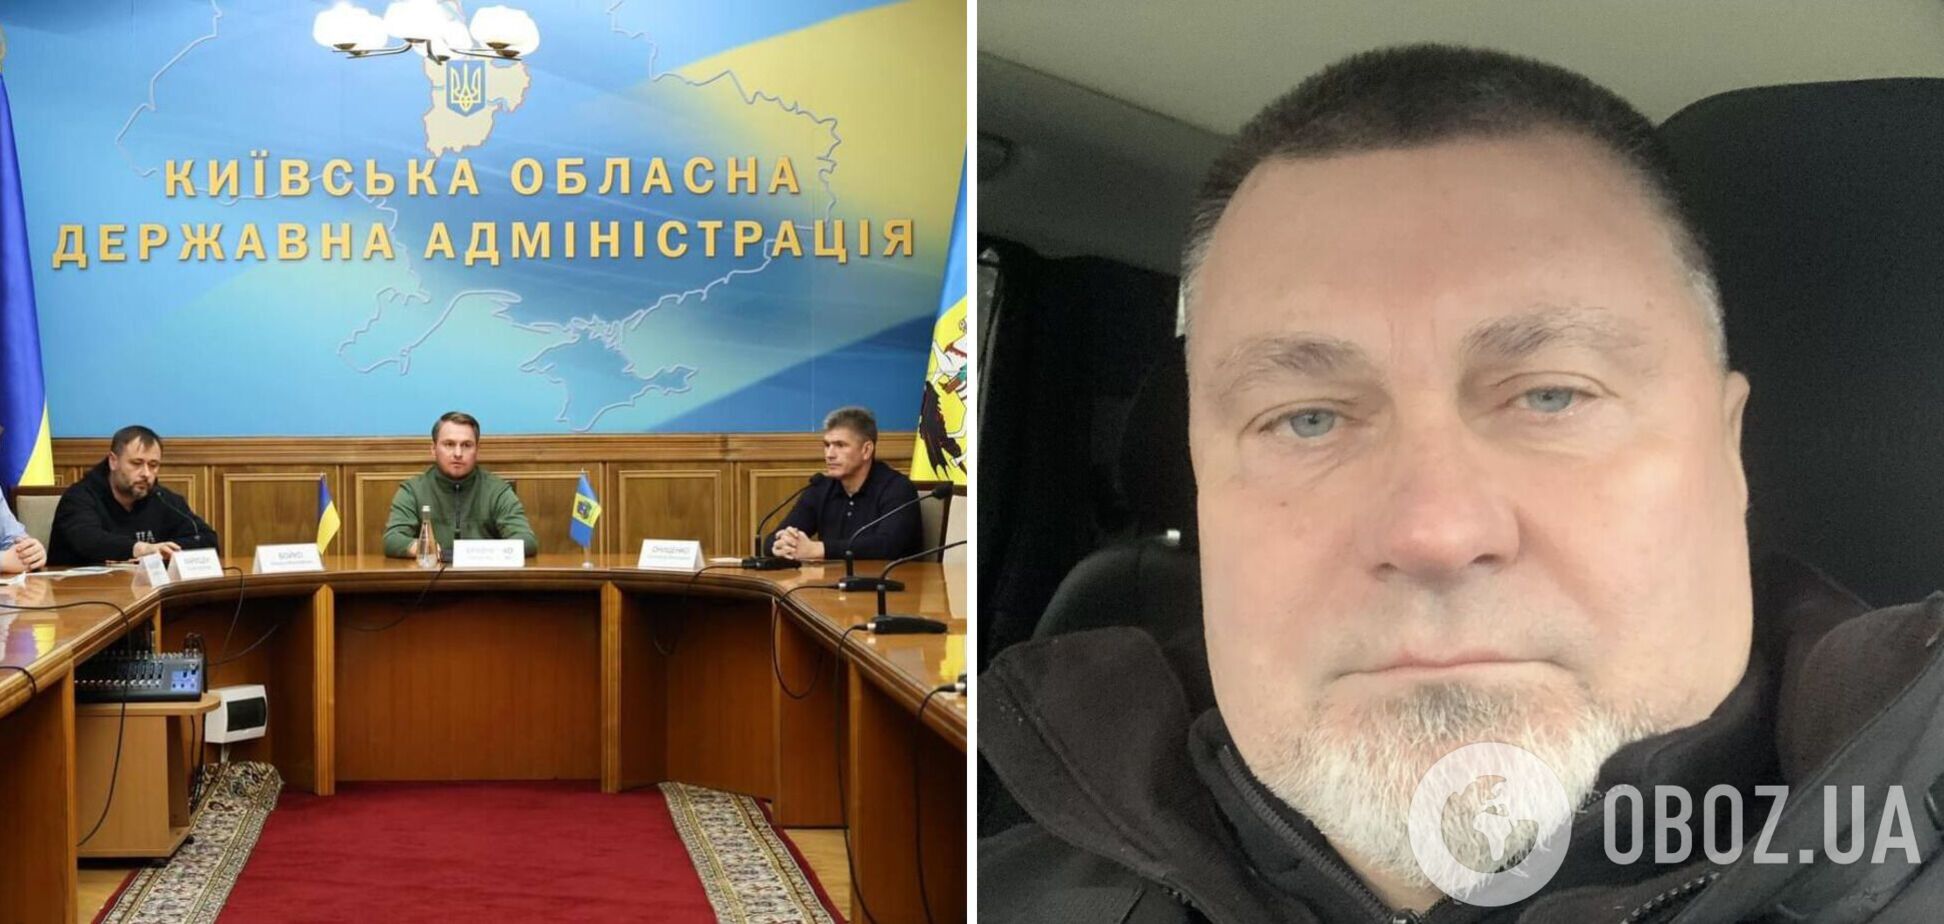 'Подобное поведение недопустимо': глава Киевской ОВА пообещал уволить Майбоженко, который пьяным въехал в толпу людей автомобилем